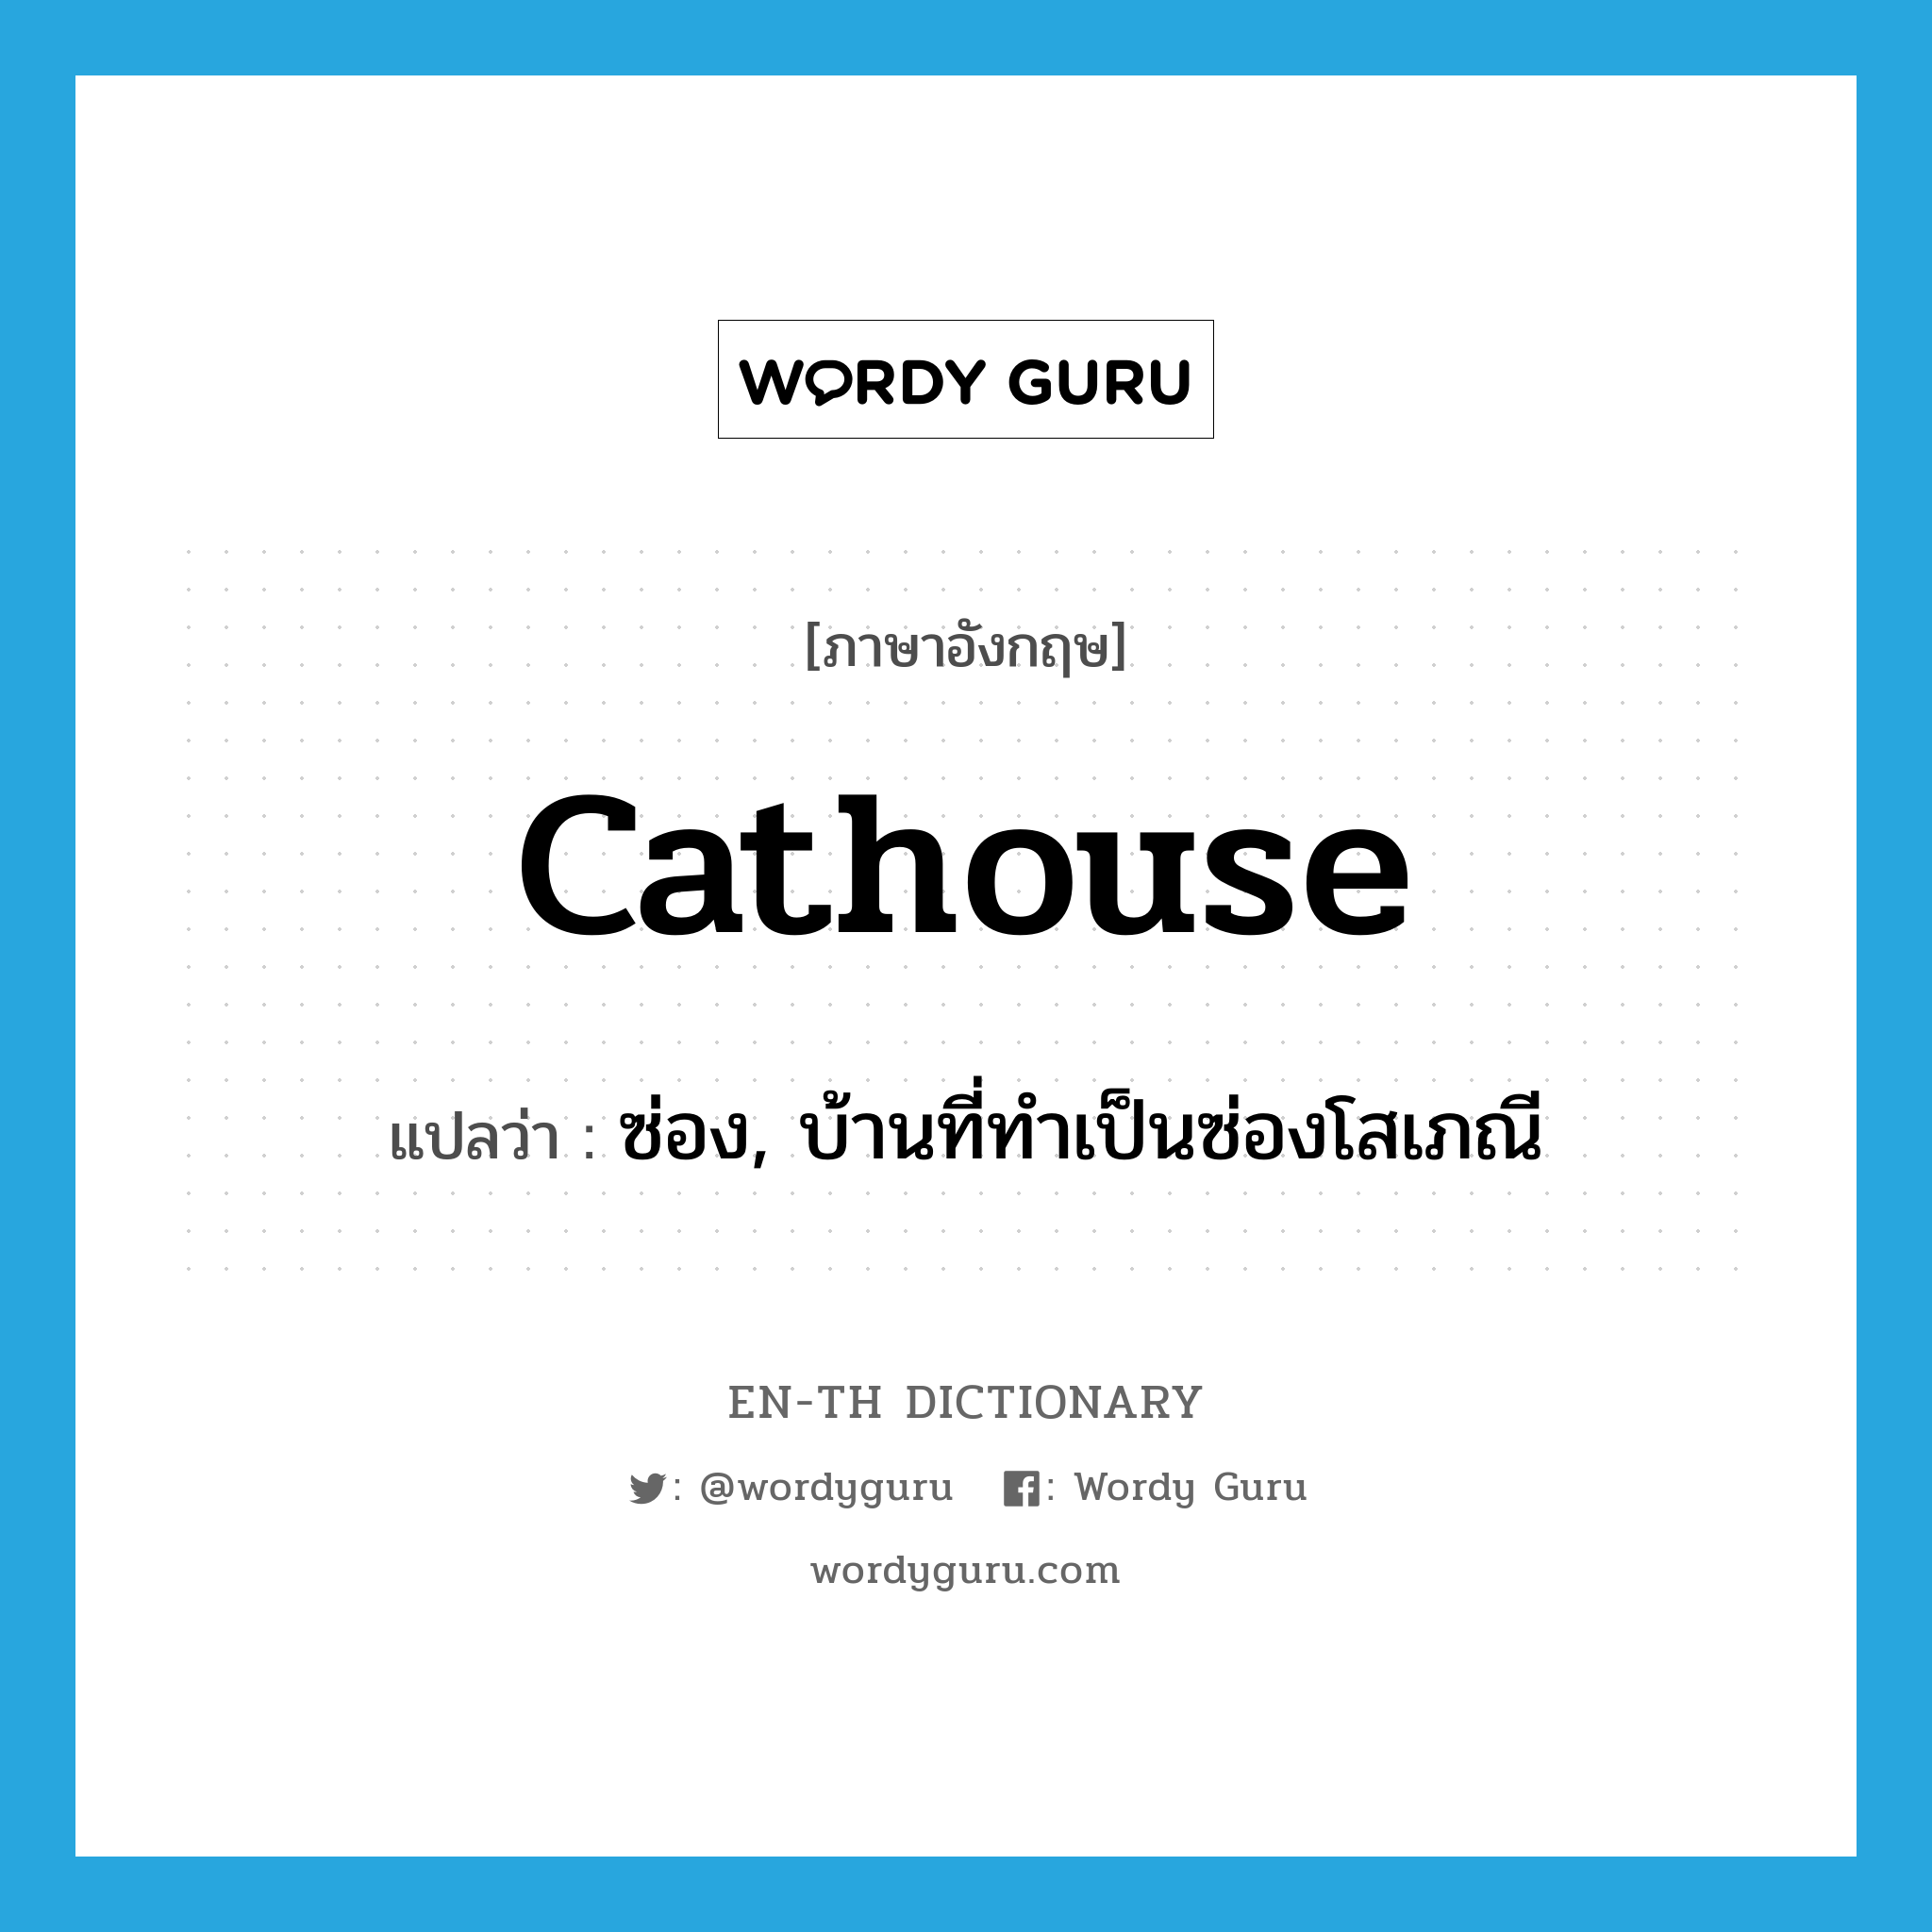 ซ่อง, บ้านที่ทำเป็นซ่องโสเภณี ภาษาอังกฤษ?, คำศัพท์ภาษาอังกฤษ ซ่อง, บ้านที่ทำเป็นซ่องโสเภณี แปลว่า cathouse ประเภท N หมวด N